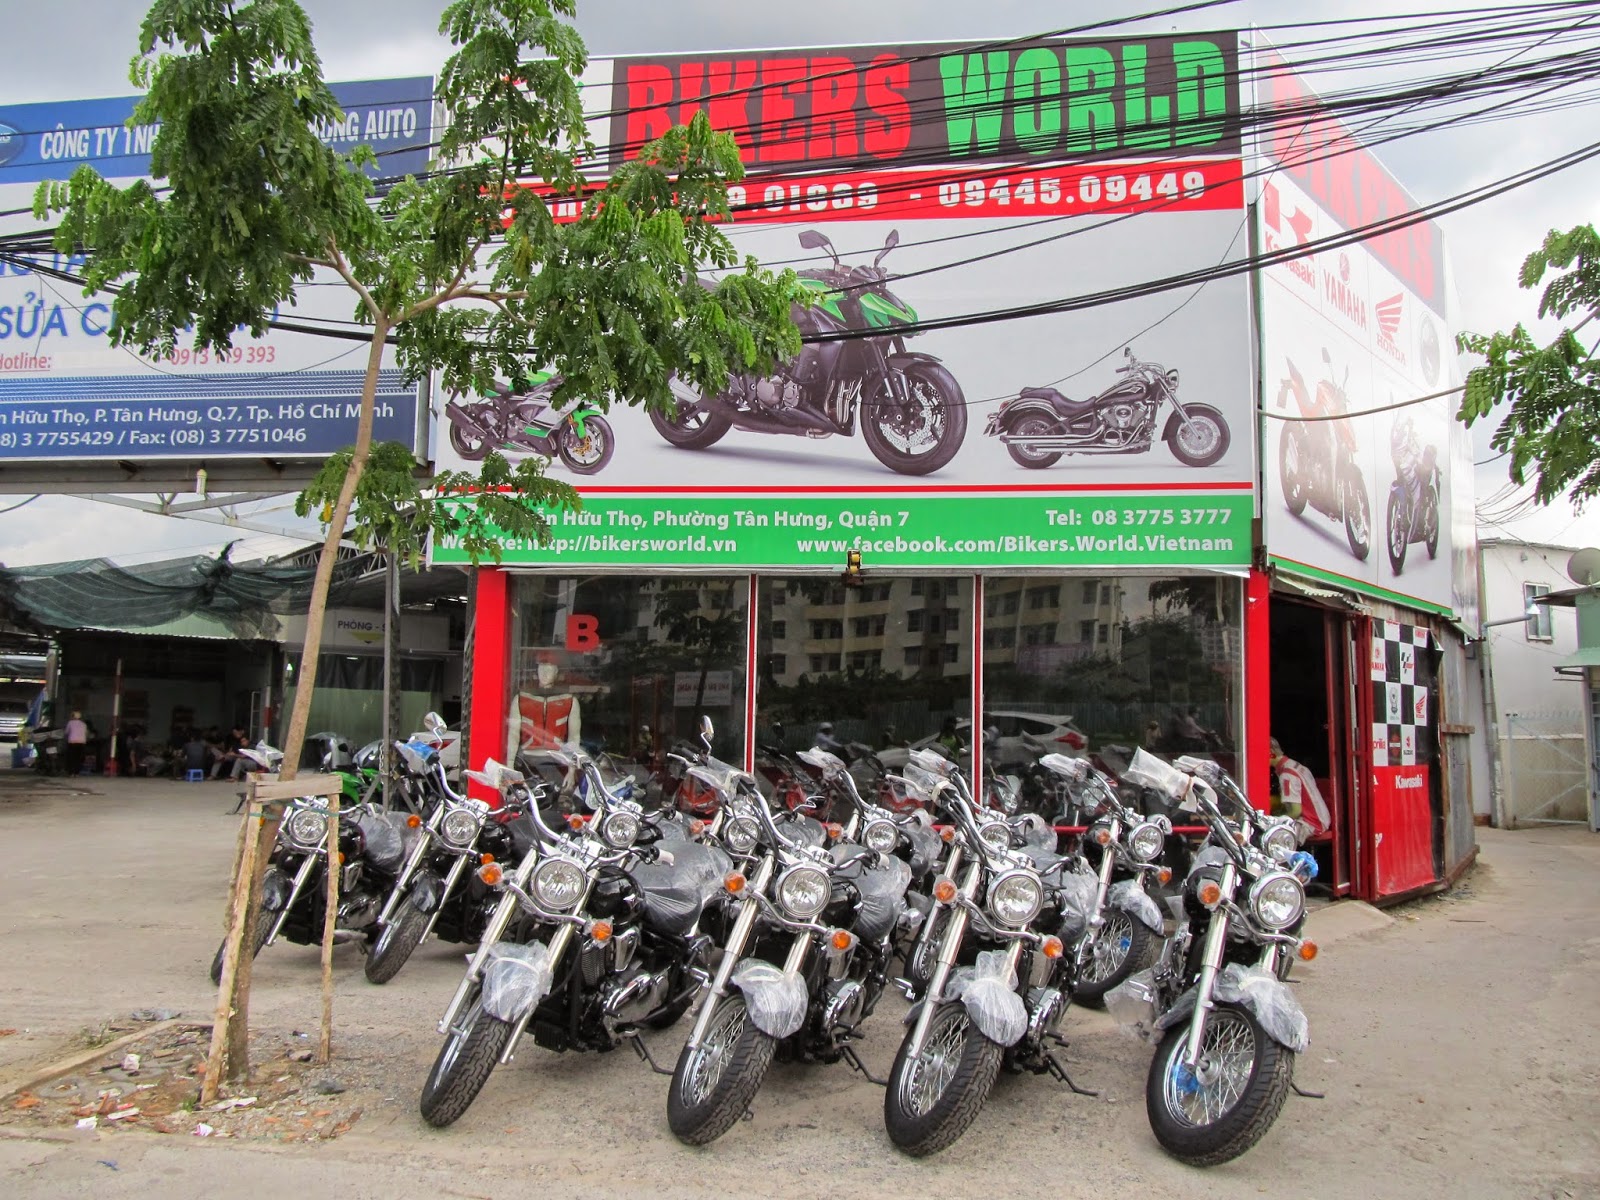 Bikers world - chuyên bán các dòng moto phân khối lớn tại việt nam